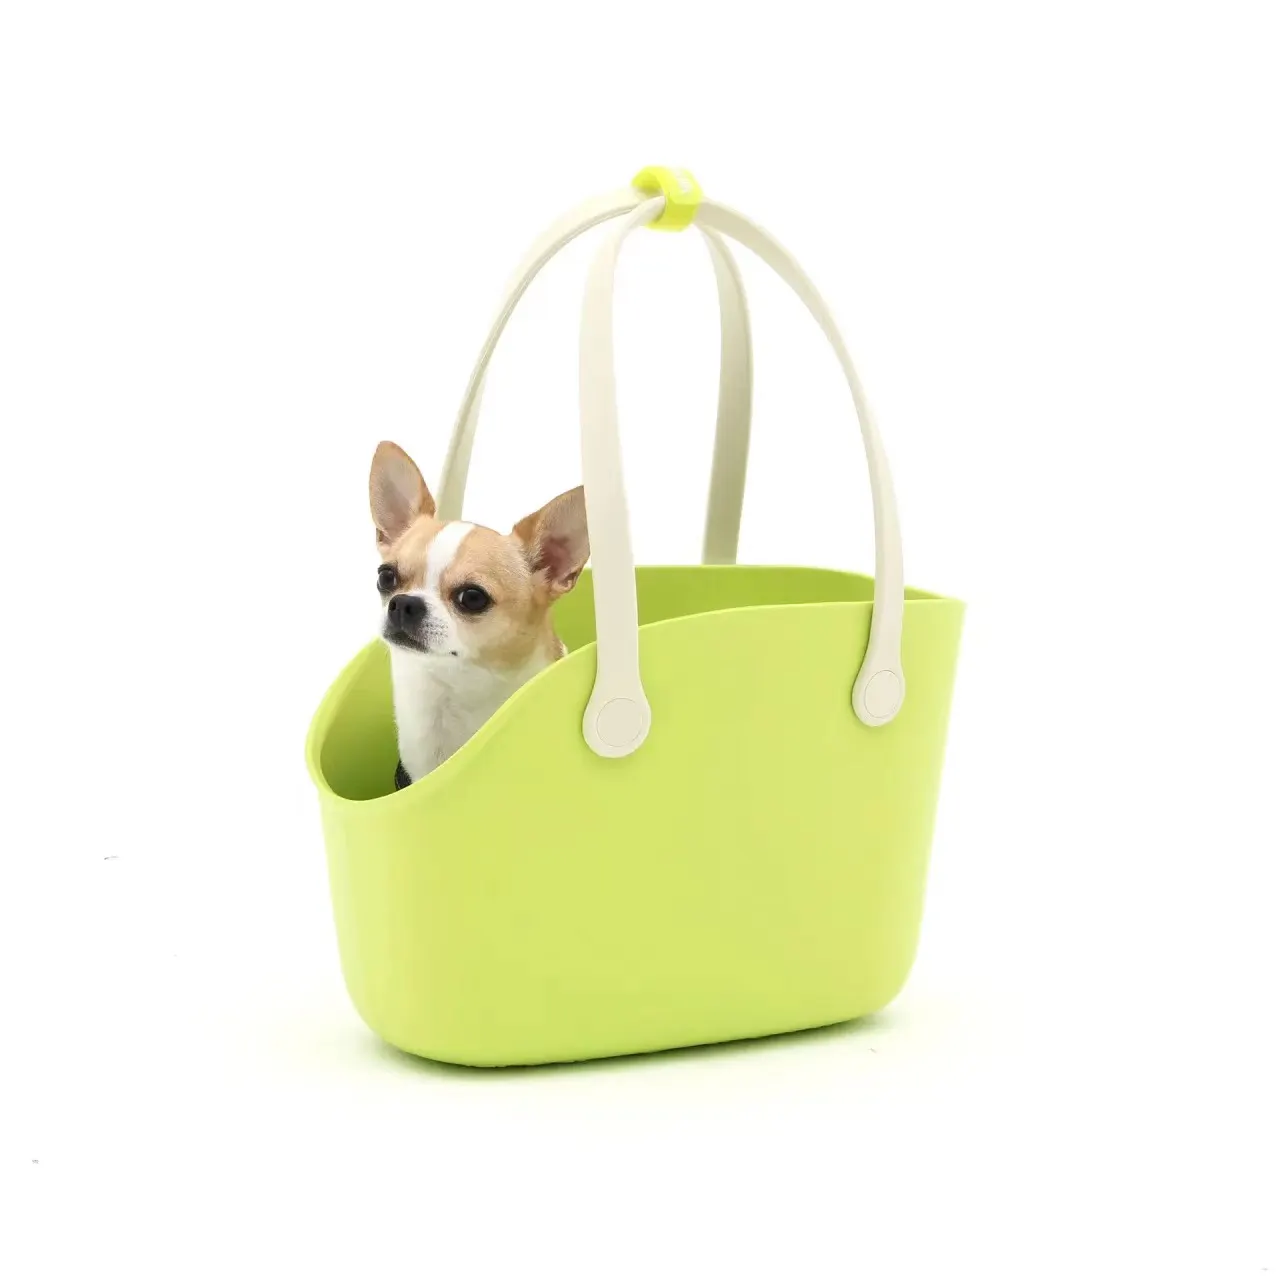 Pet EVA Carrier bag travel tote Manufacturer Pet dog Car booster dog purse carrier dog carrier bag tote